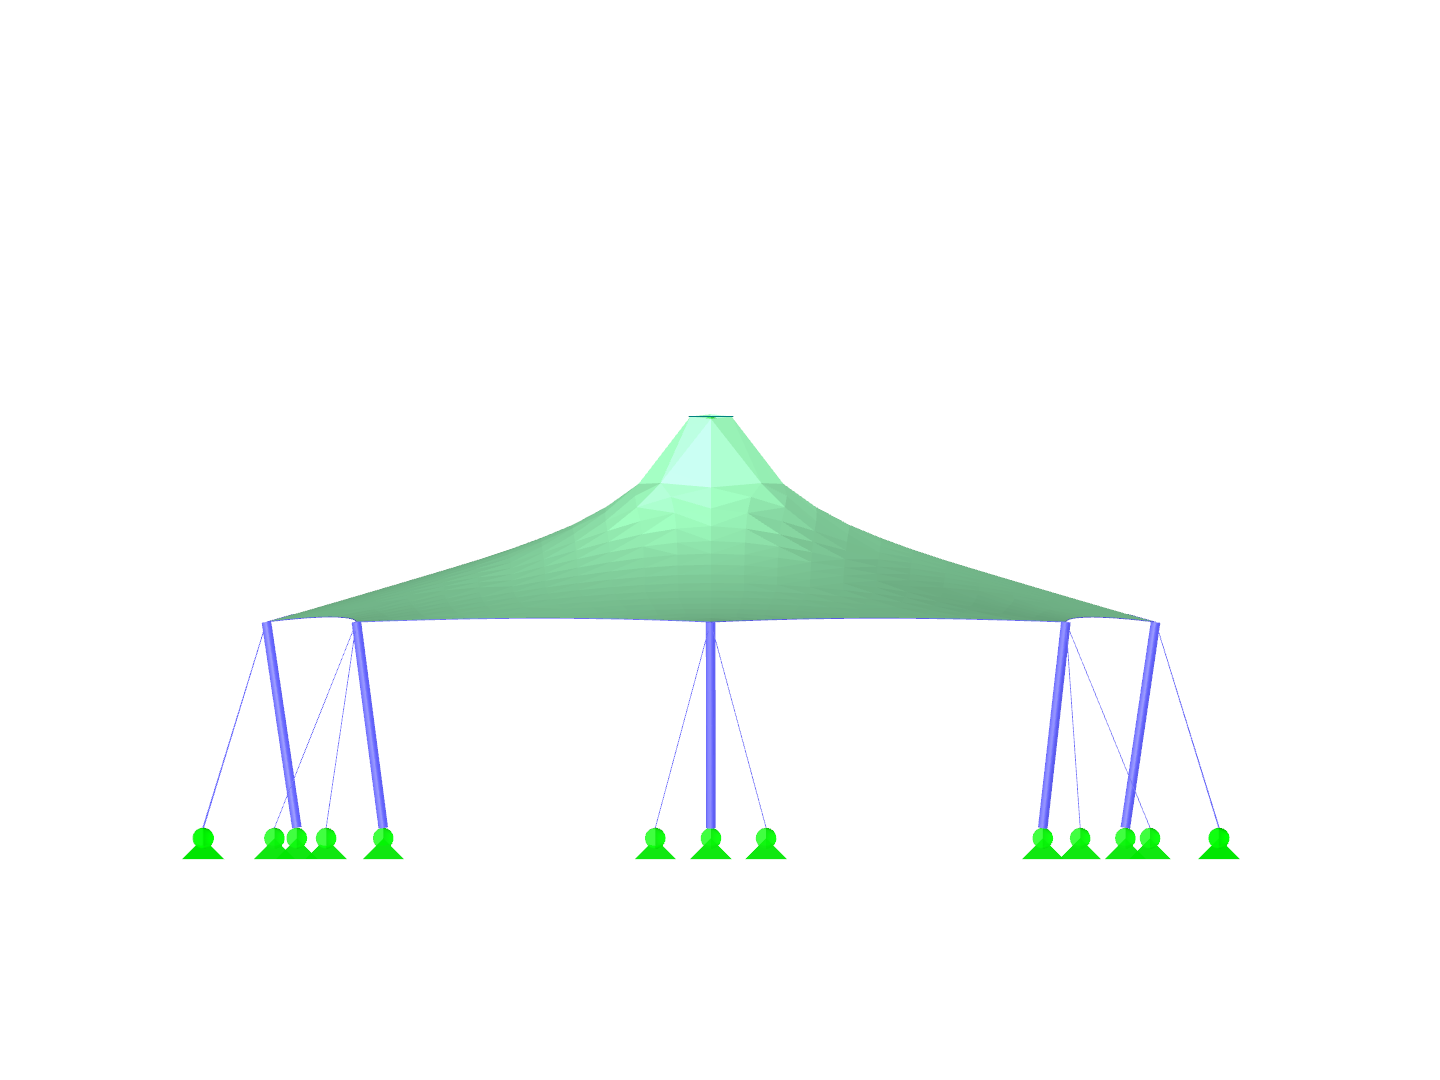 Tetto a tenda con due punte coniche, vista dell'asse X.